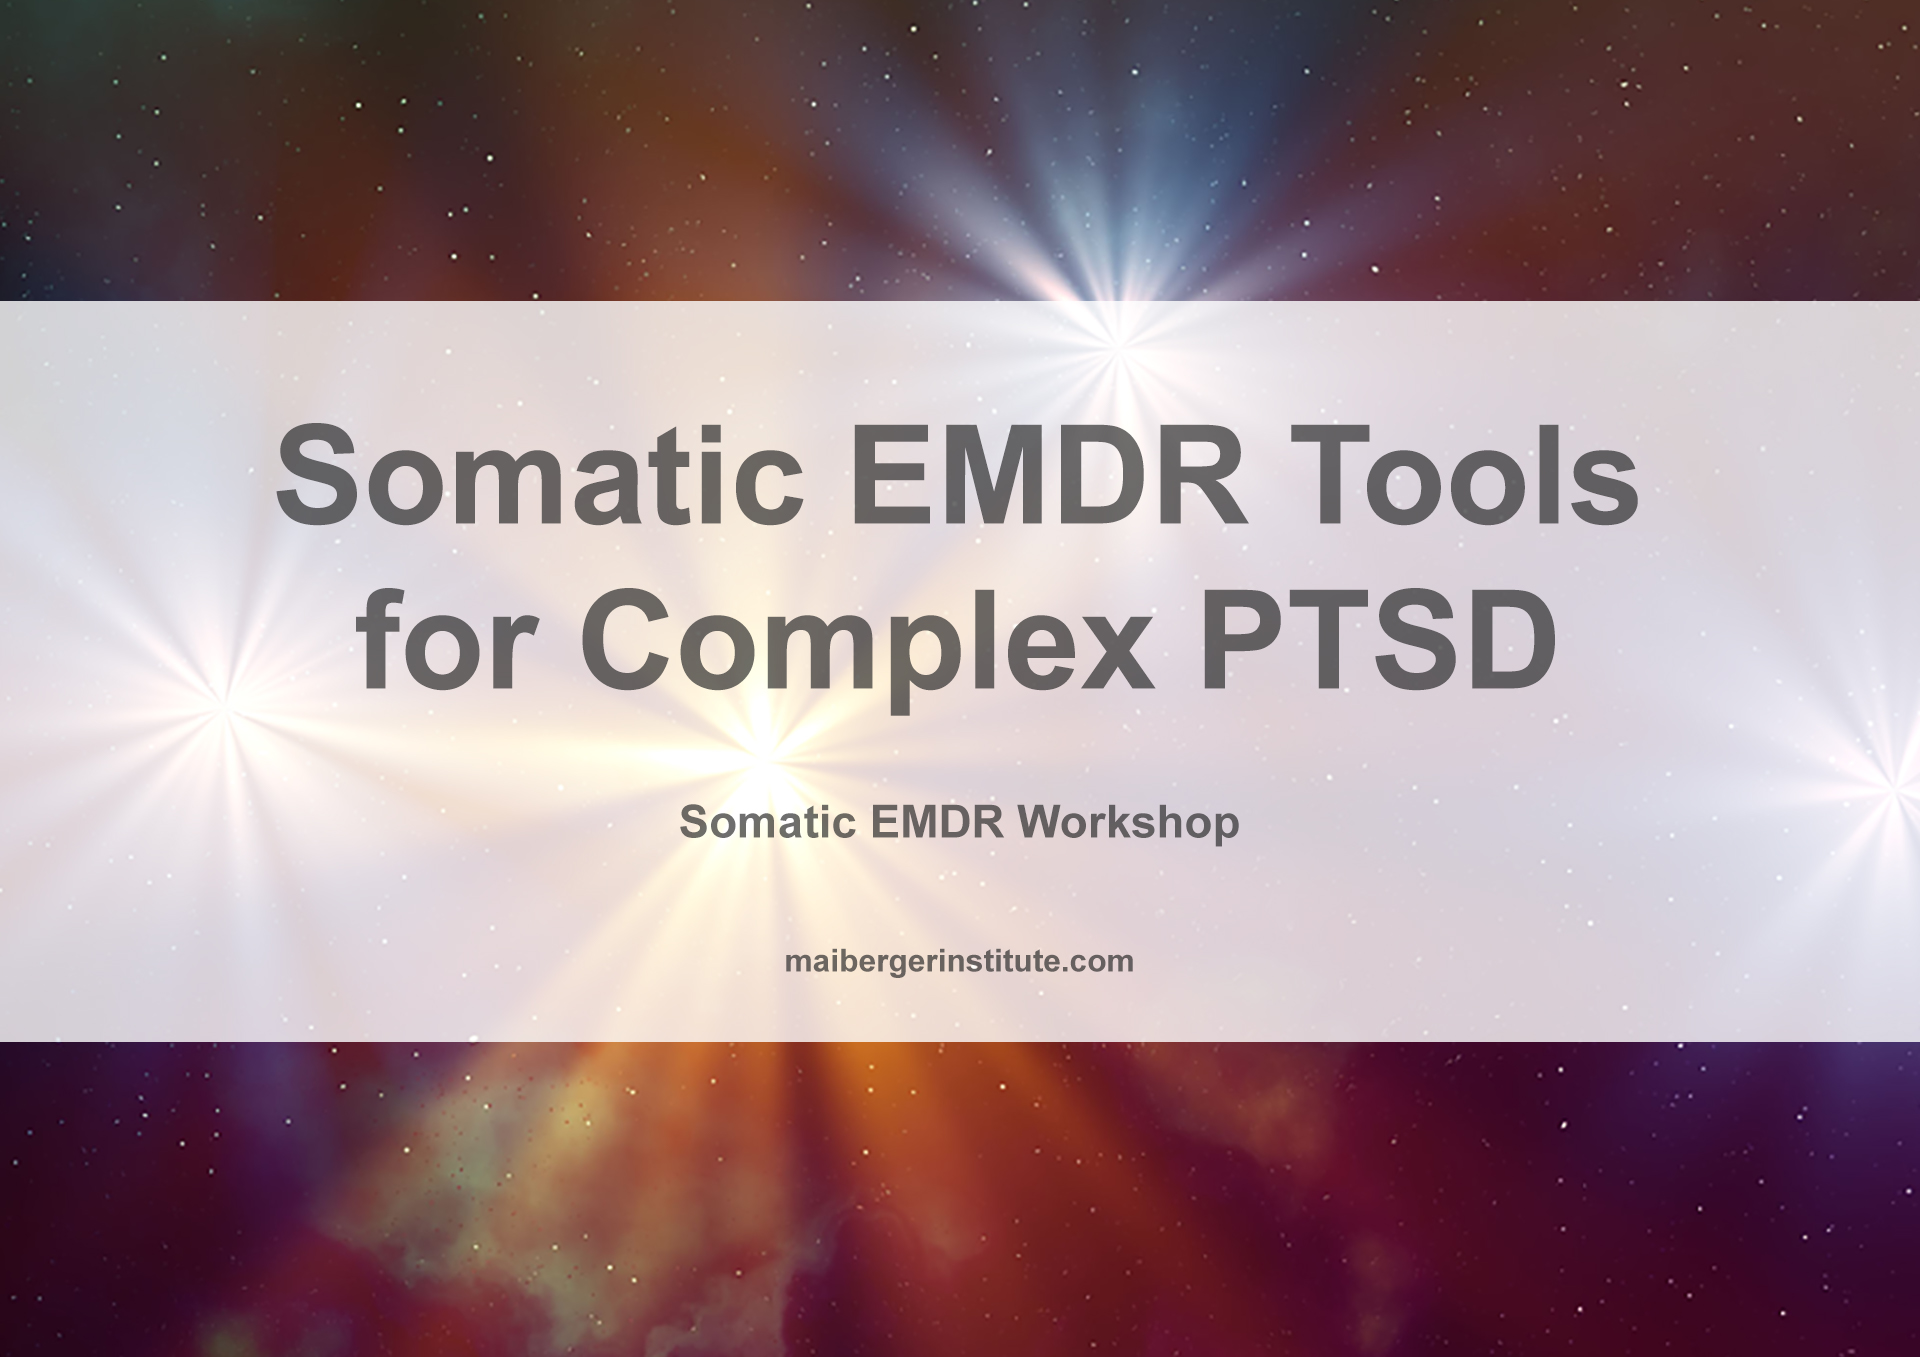 Somatic EMDR Workshops - Somatic EMDR Tools for Complex PTSD